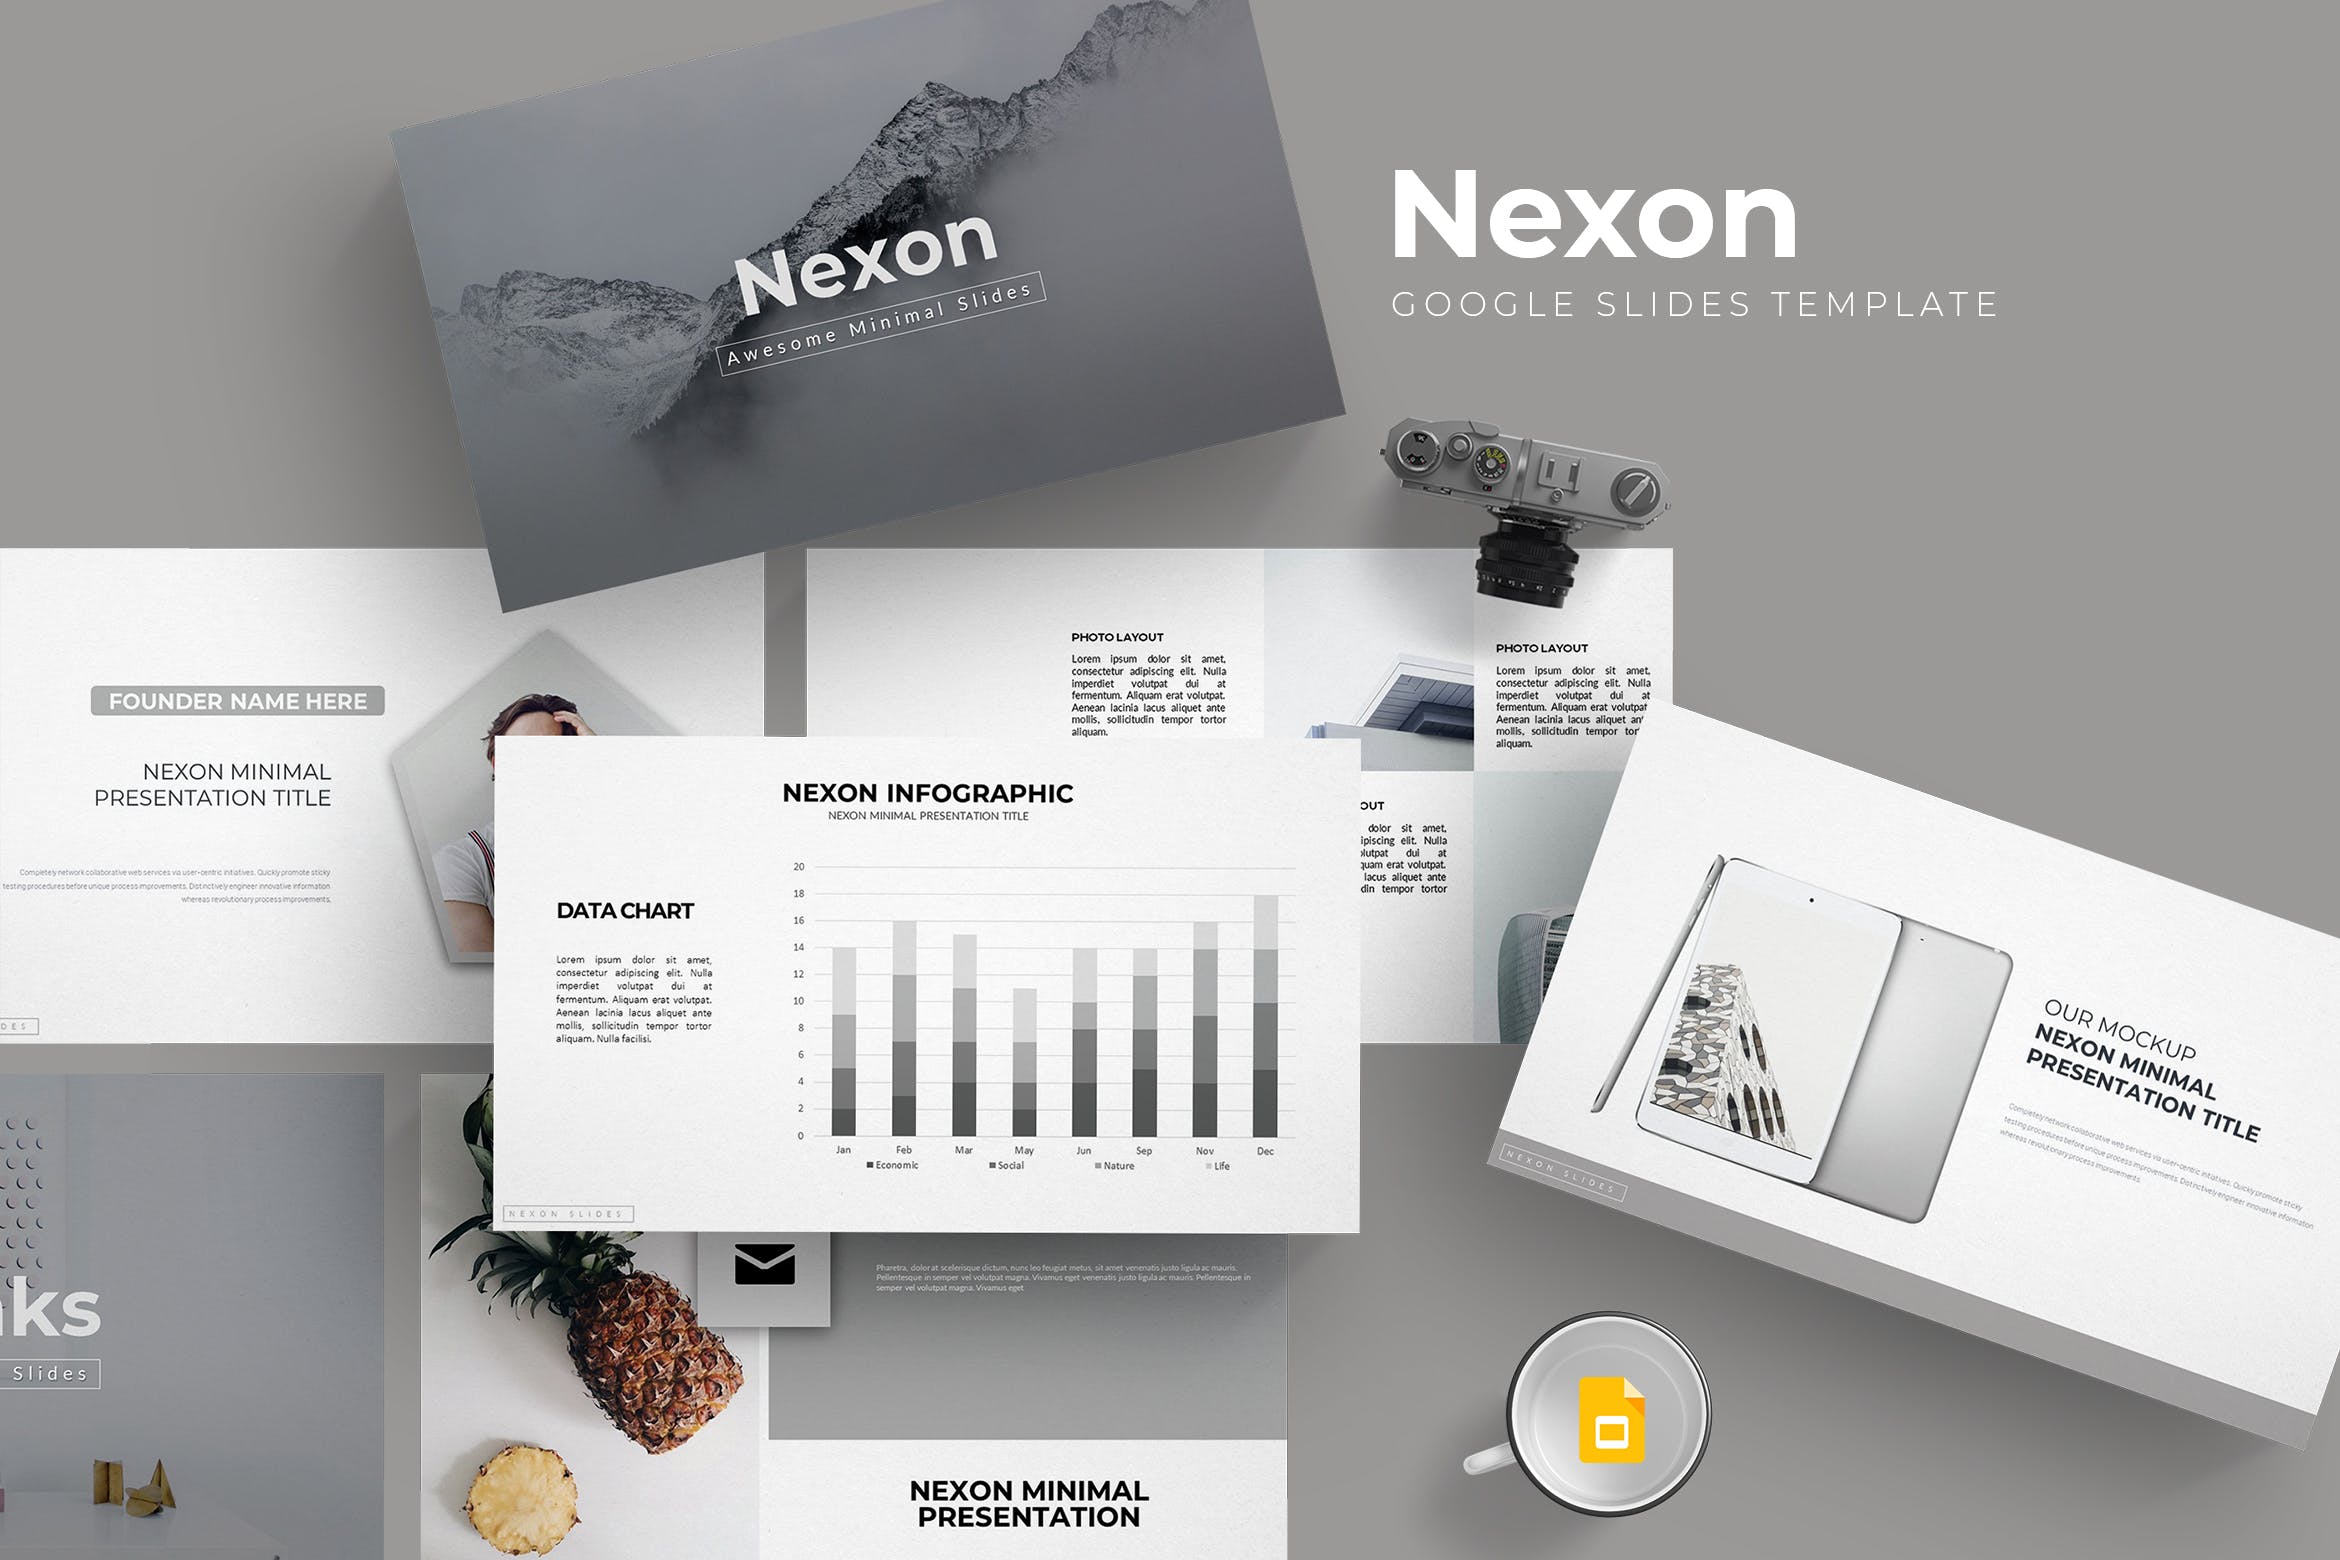 市场策划/商业活动宣讲PPT幻灯片模板Nexon Google Slides Template